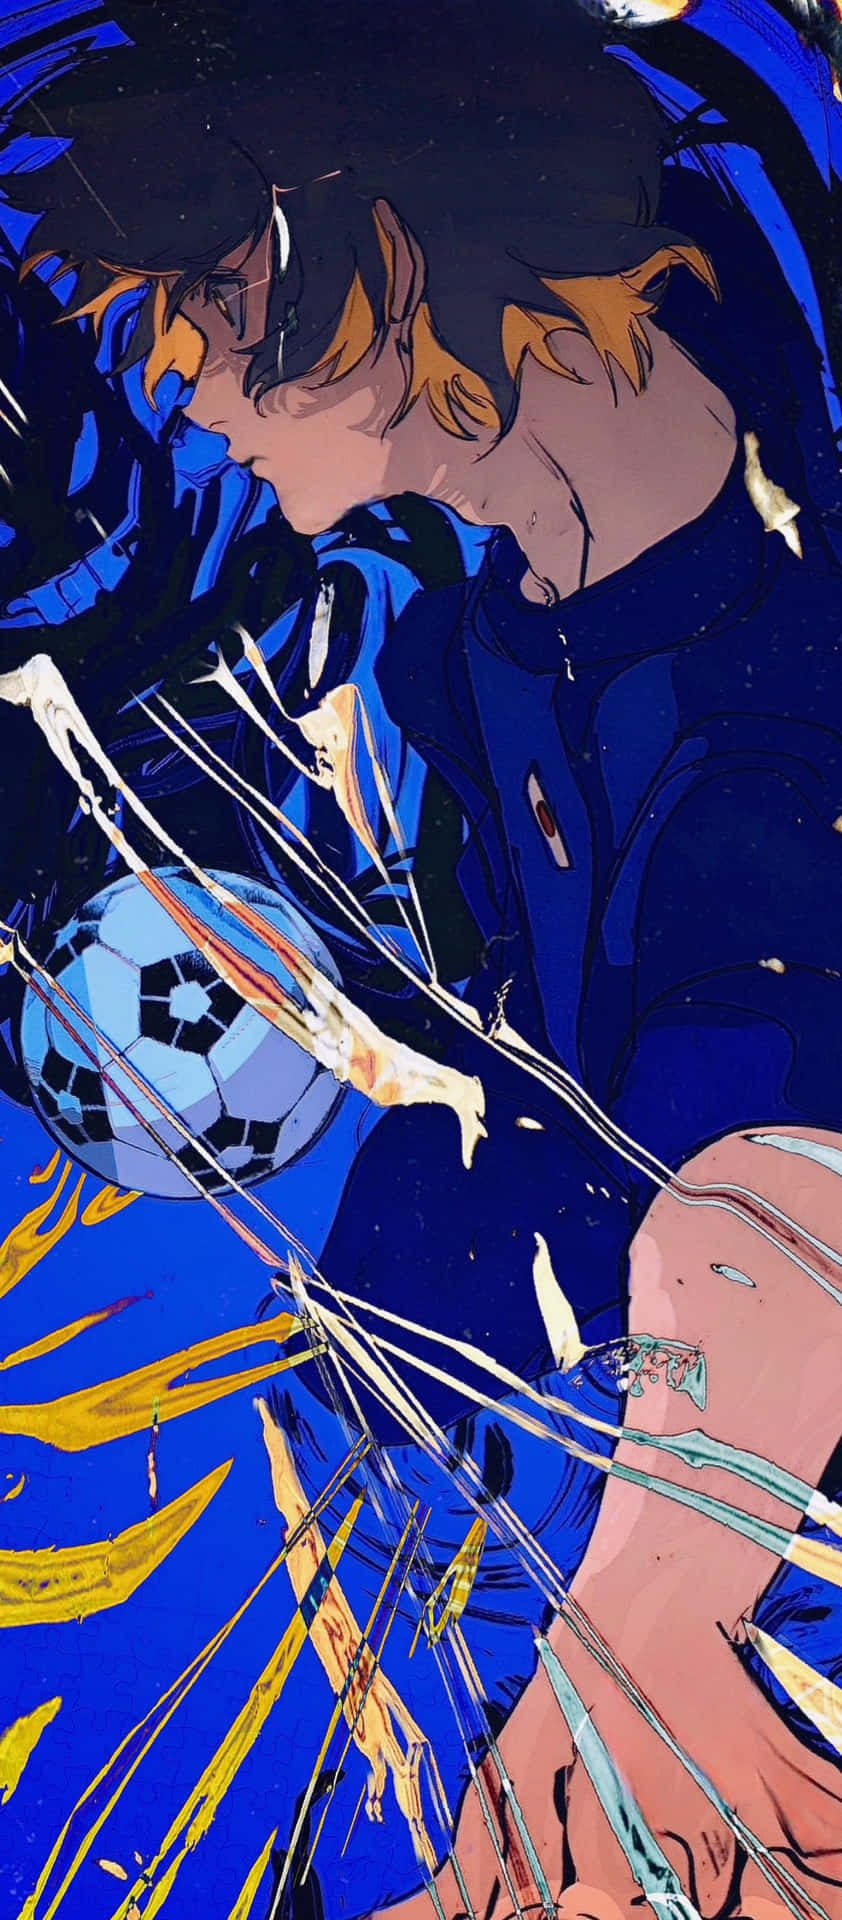 Dynamic Soccer Action Anime Art Wallpaper